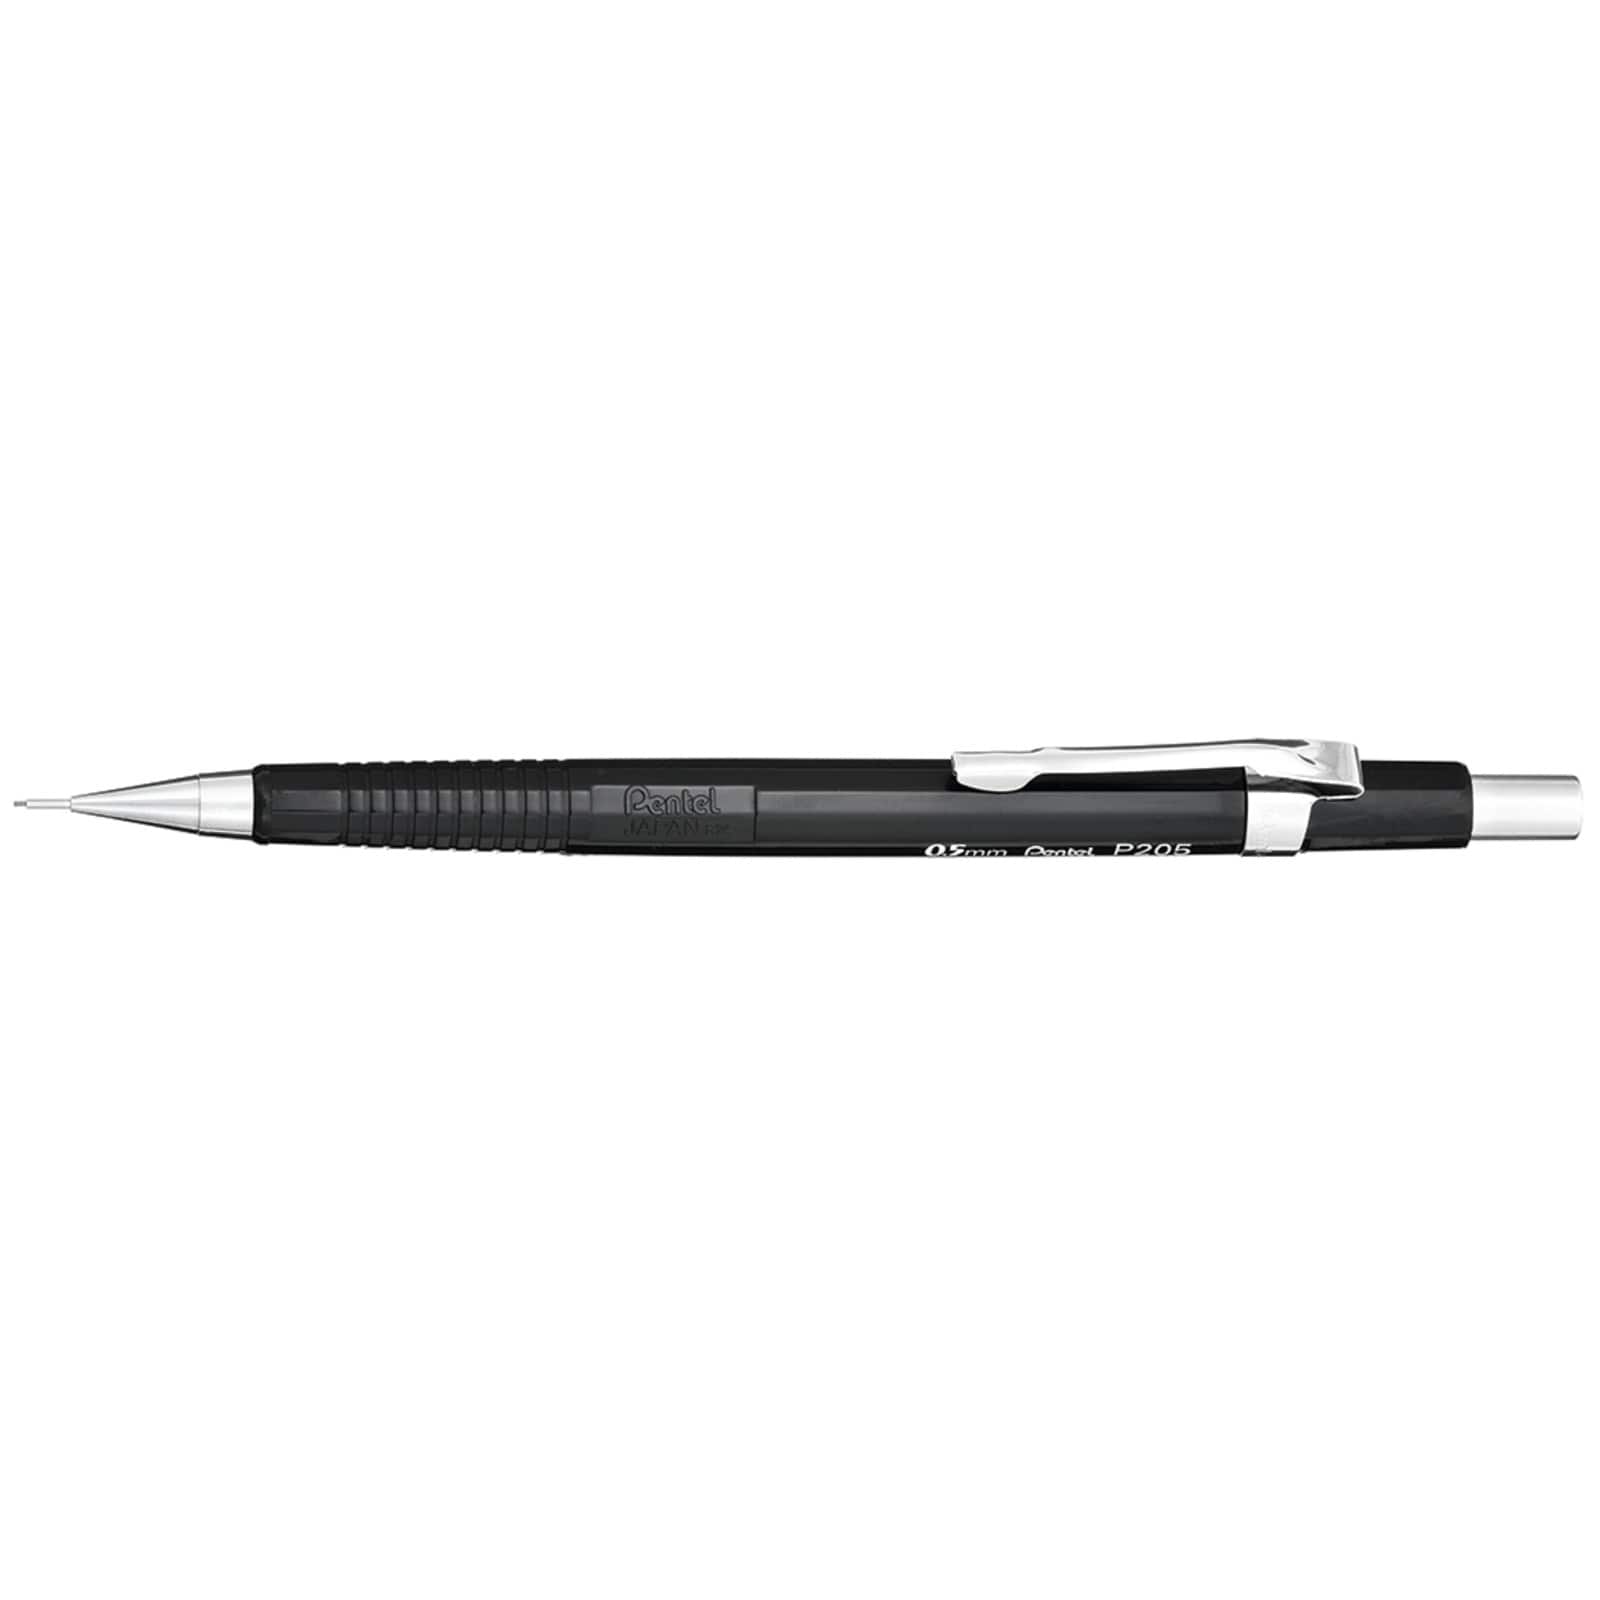 Pentel® Sharp Mechanical Pencil, 0.5mm